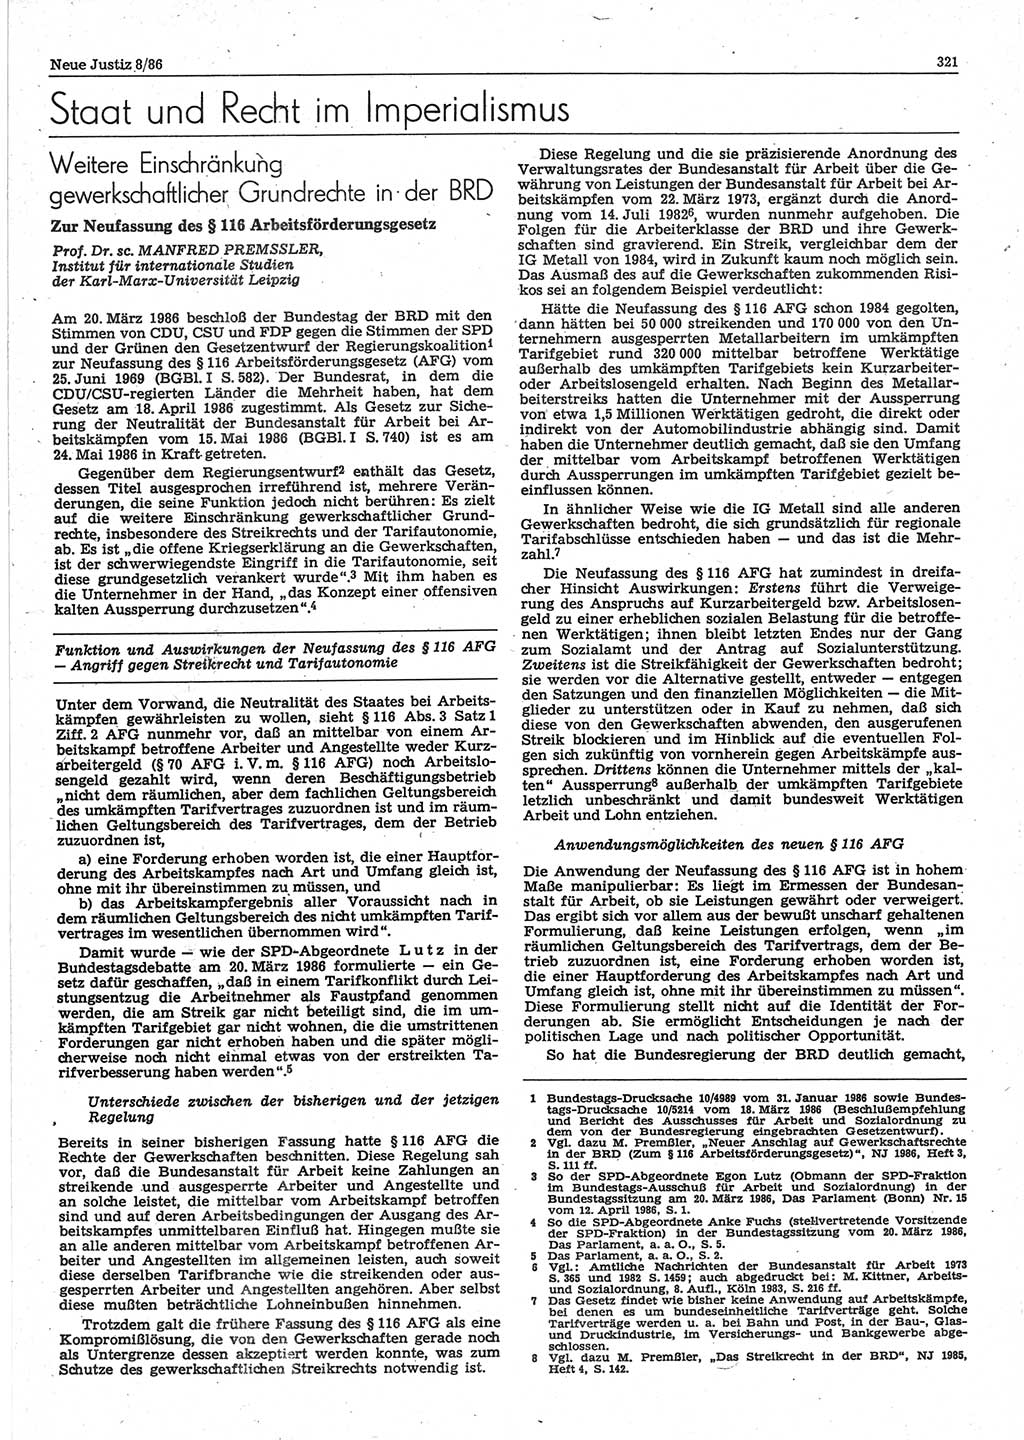 Neue Justiz (NJ), Zeitschrift für sozialistisches Recht und Gesetzlichkeit [Deutsche Demokratische Republik (DDR)], 40. Jahrgang 1986, Seite 321 (NJ DDR 1986, S. 321)